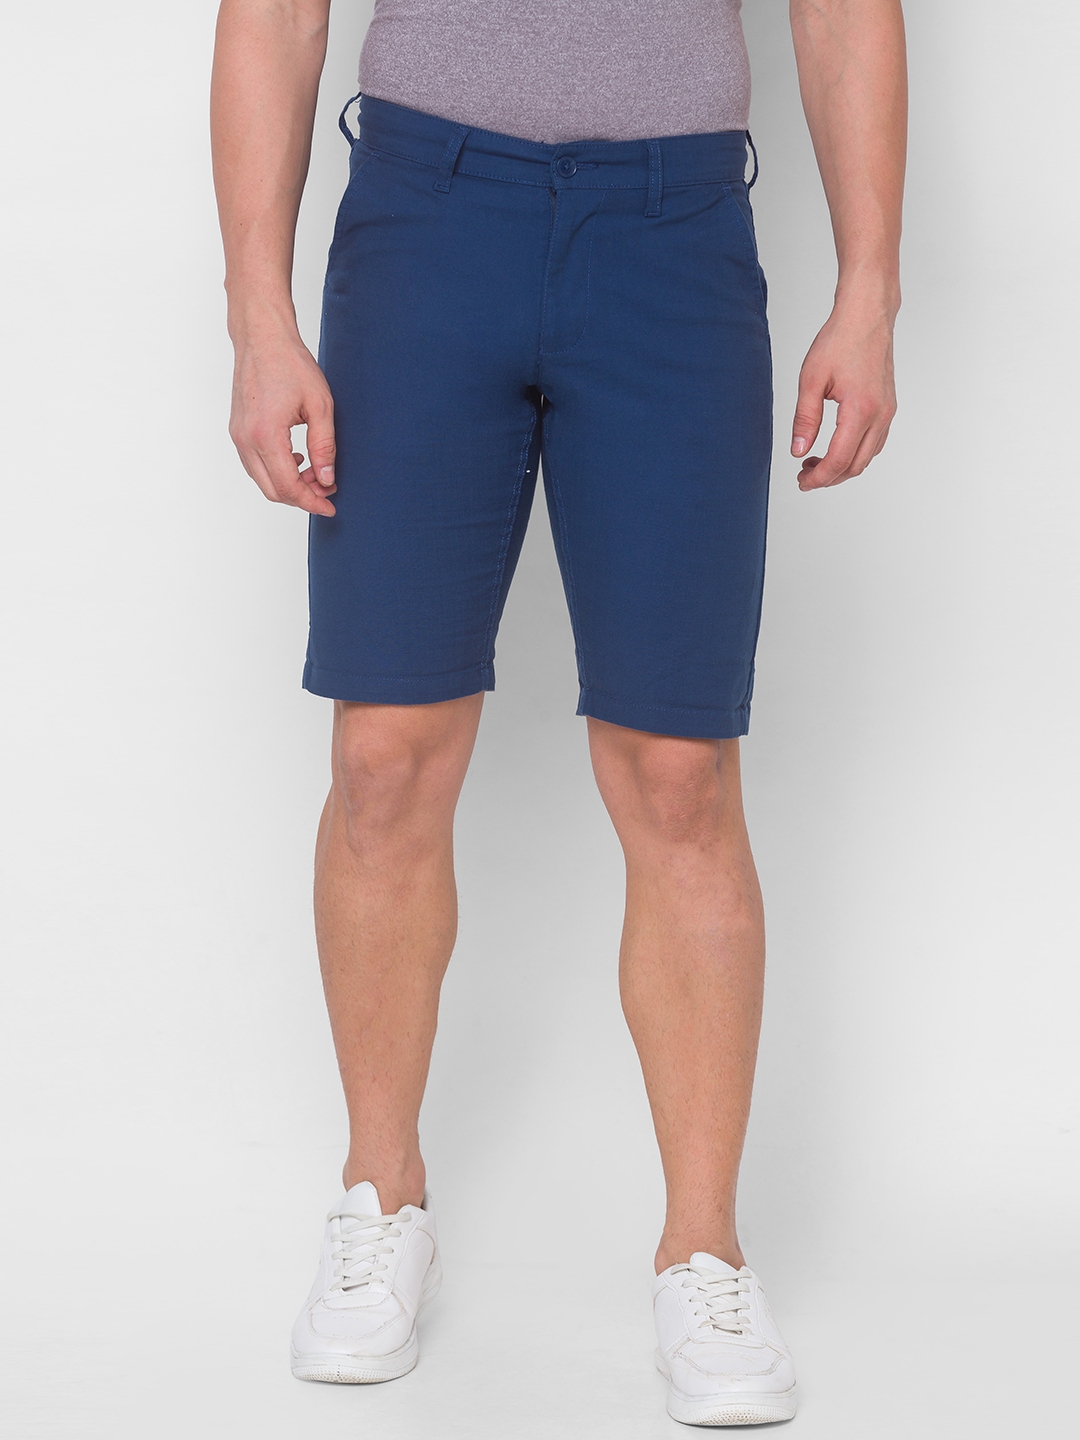 globus | Globus Solid Navy Blue Shorts